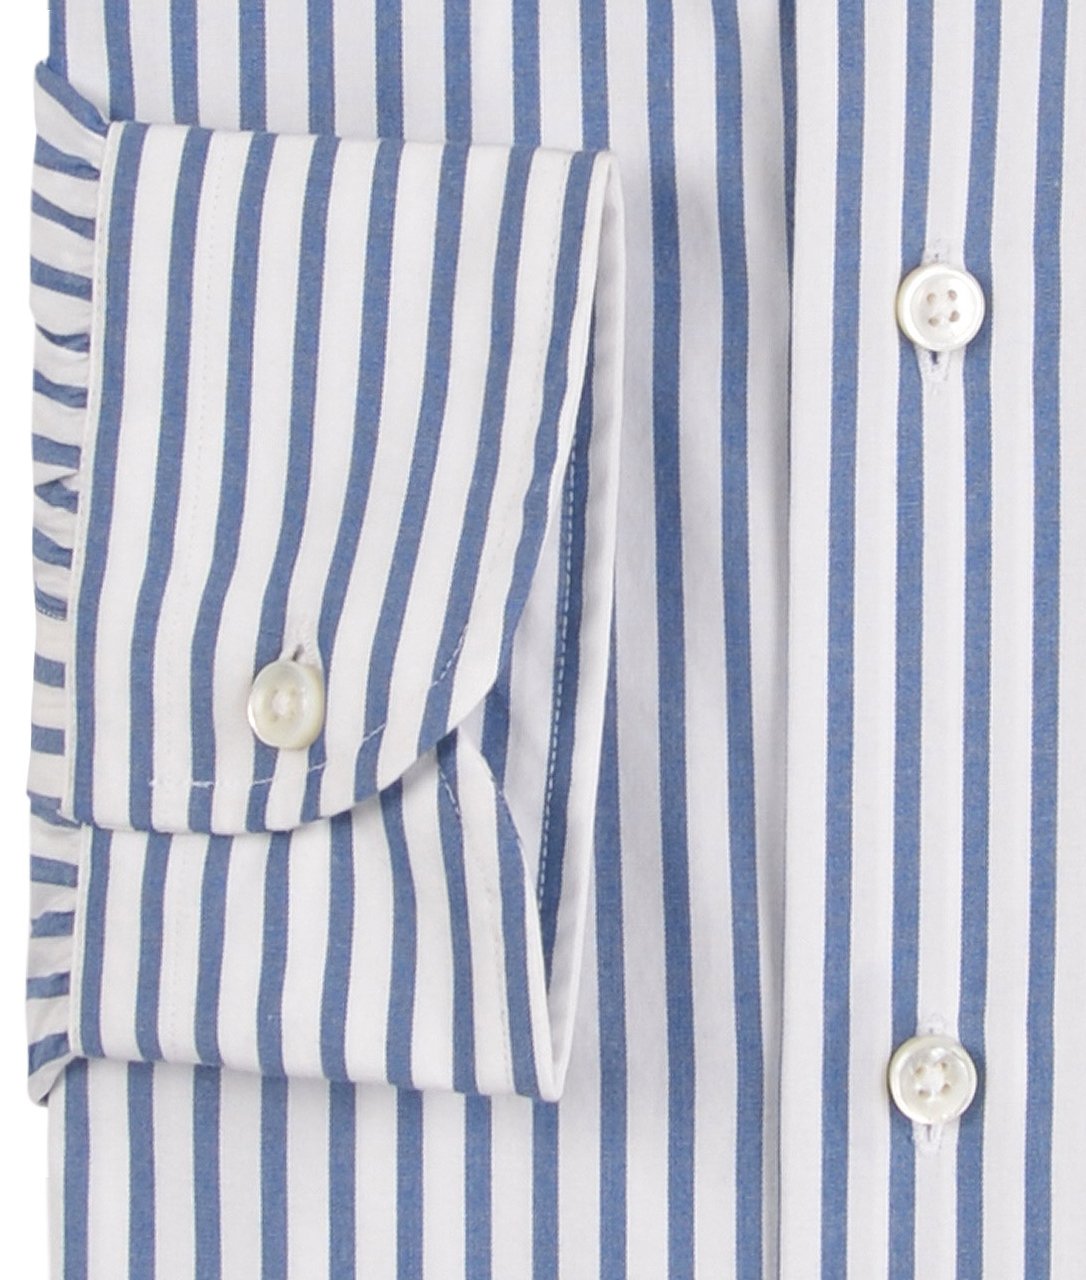 Candy Stripes: Regular Blue Dress Shirt (111960326152)